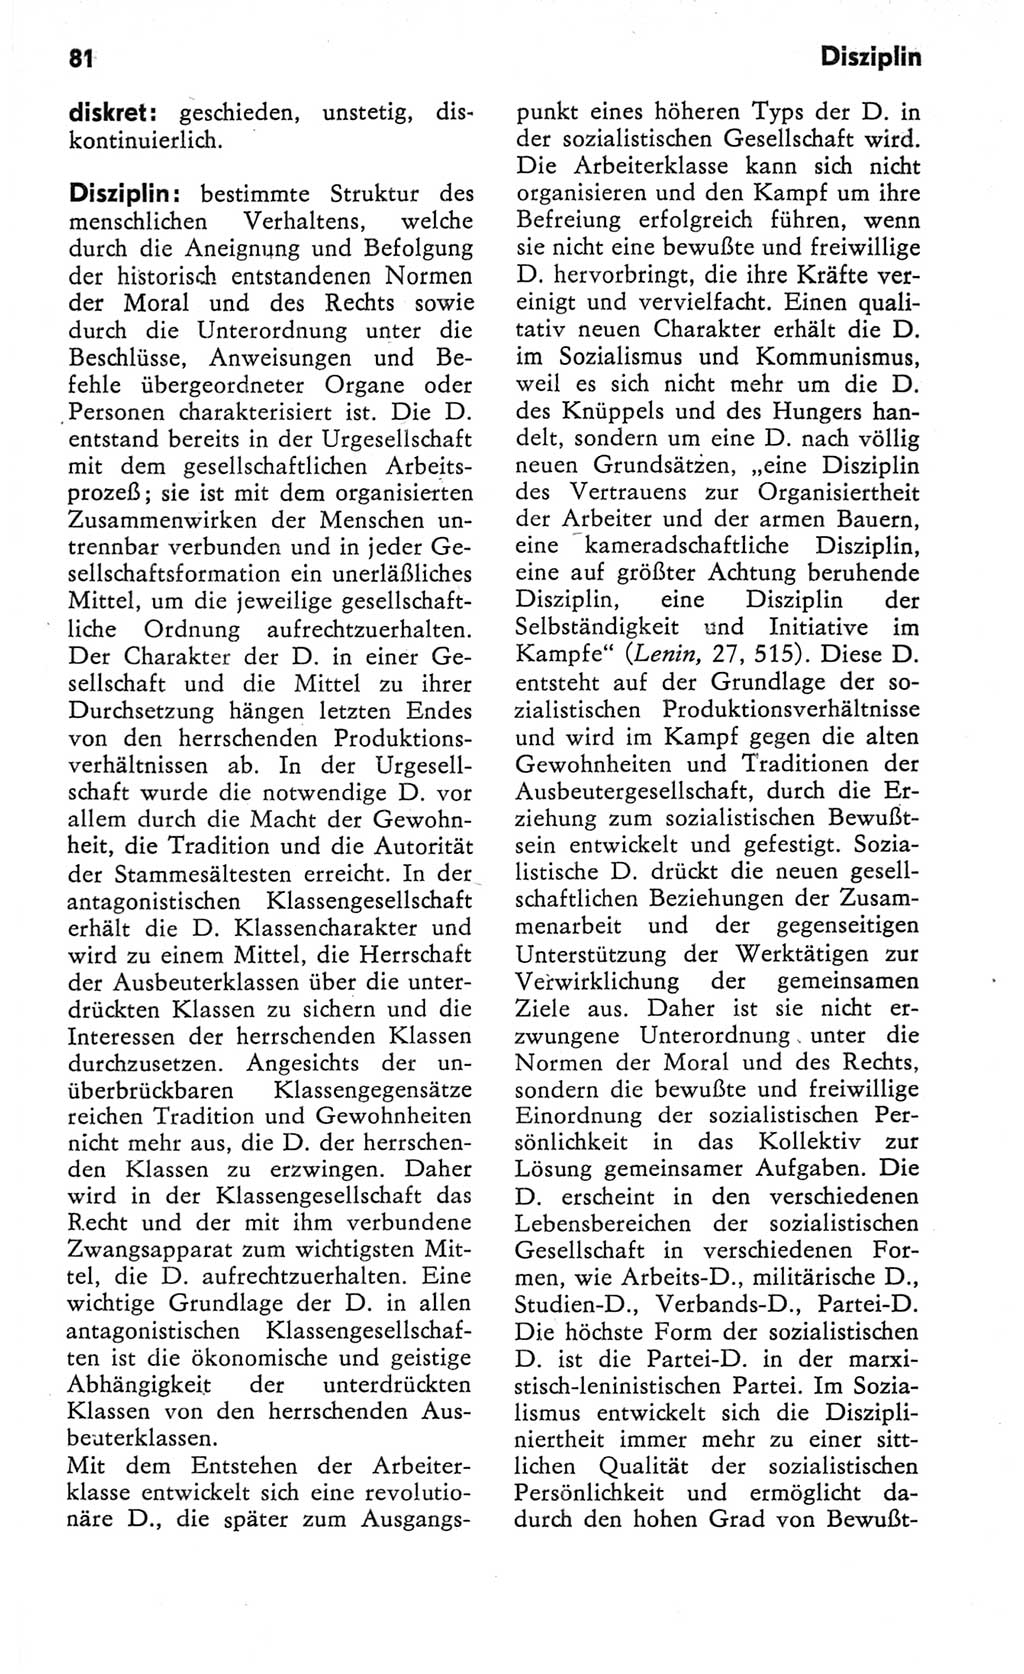 Kleines Wörterbuch der marxistisch-leninistischen Philosophie [Deutsche Demokratische Republik (DDR)] 1982, Seite 81 (Kl. Wb. ML Phil. DDR 1982, S. 81)